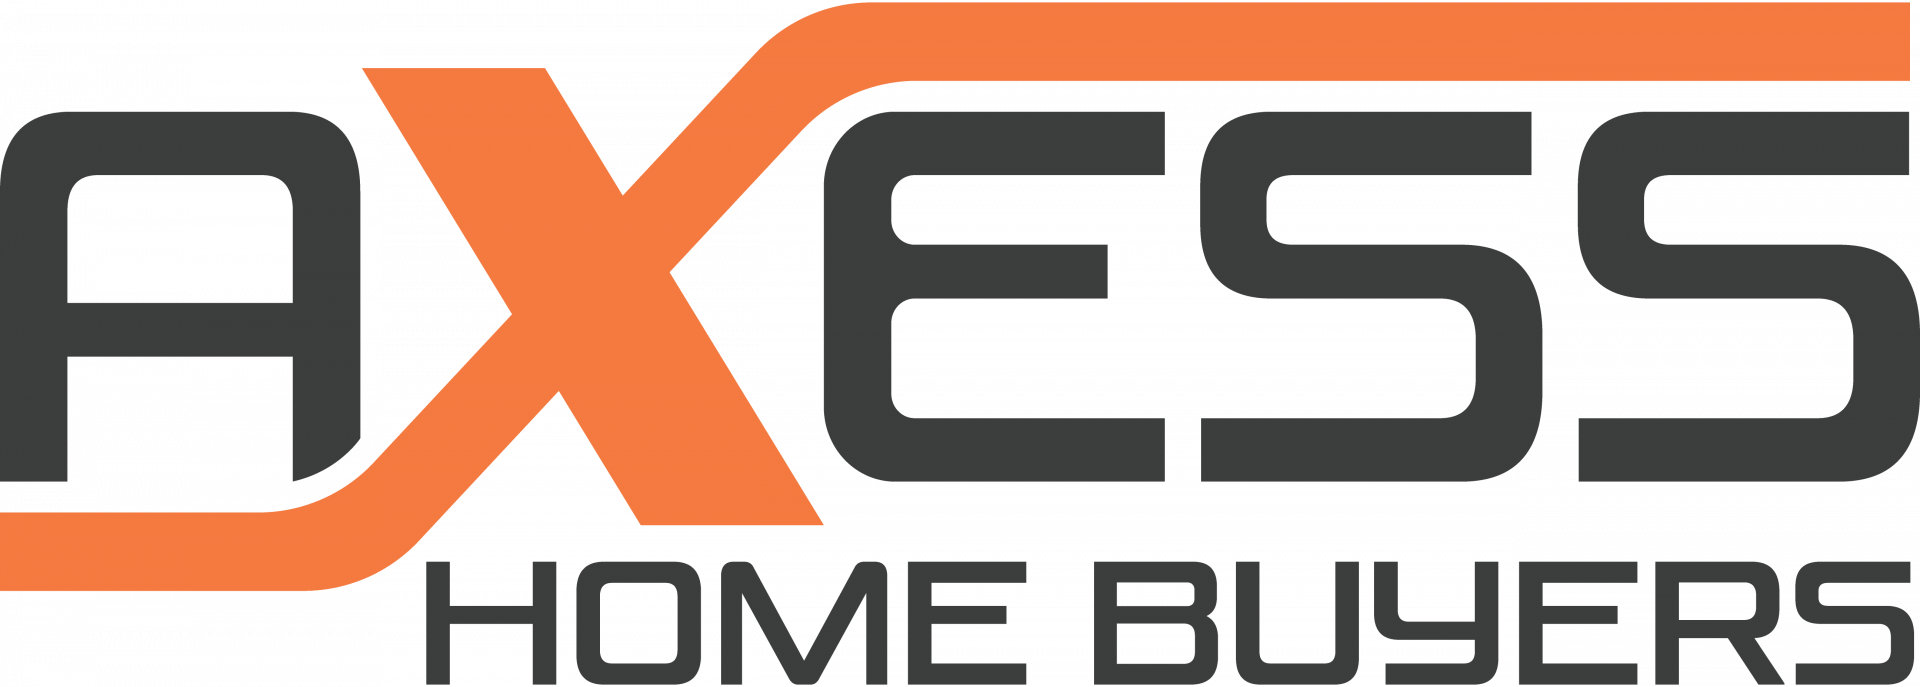 Axess Home Buyers